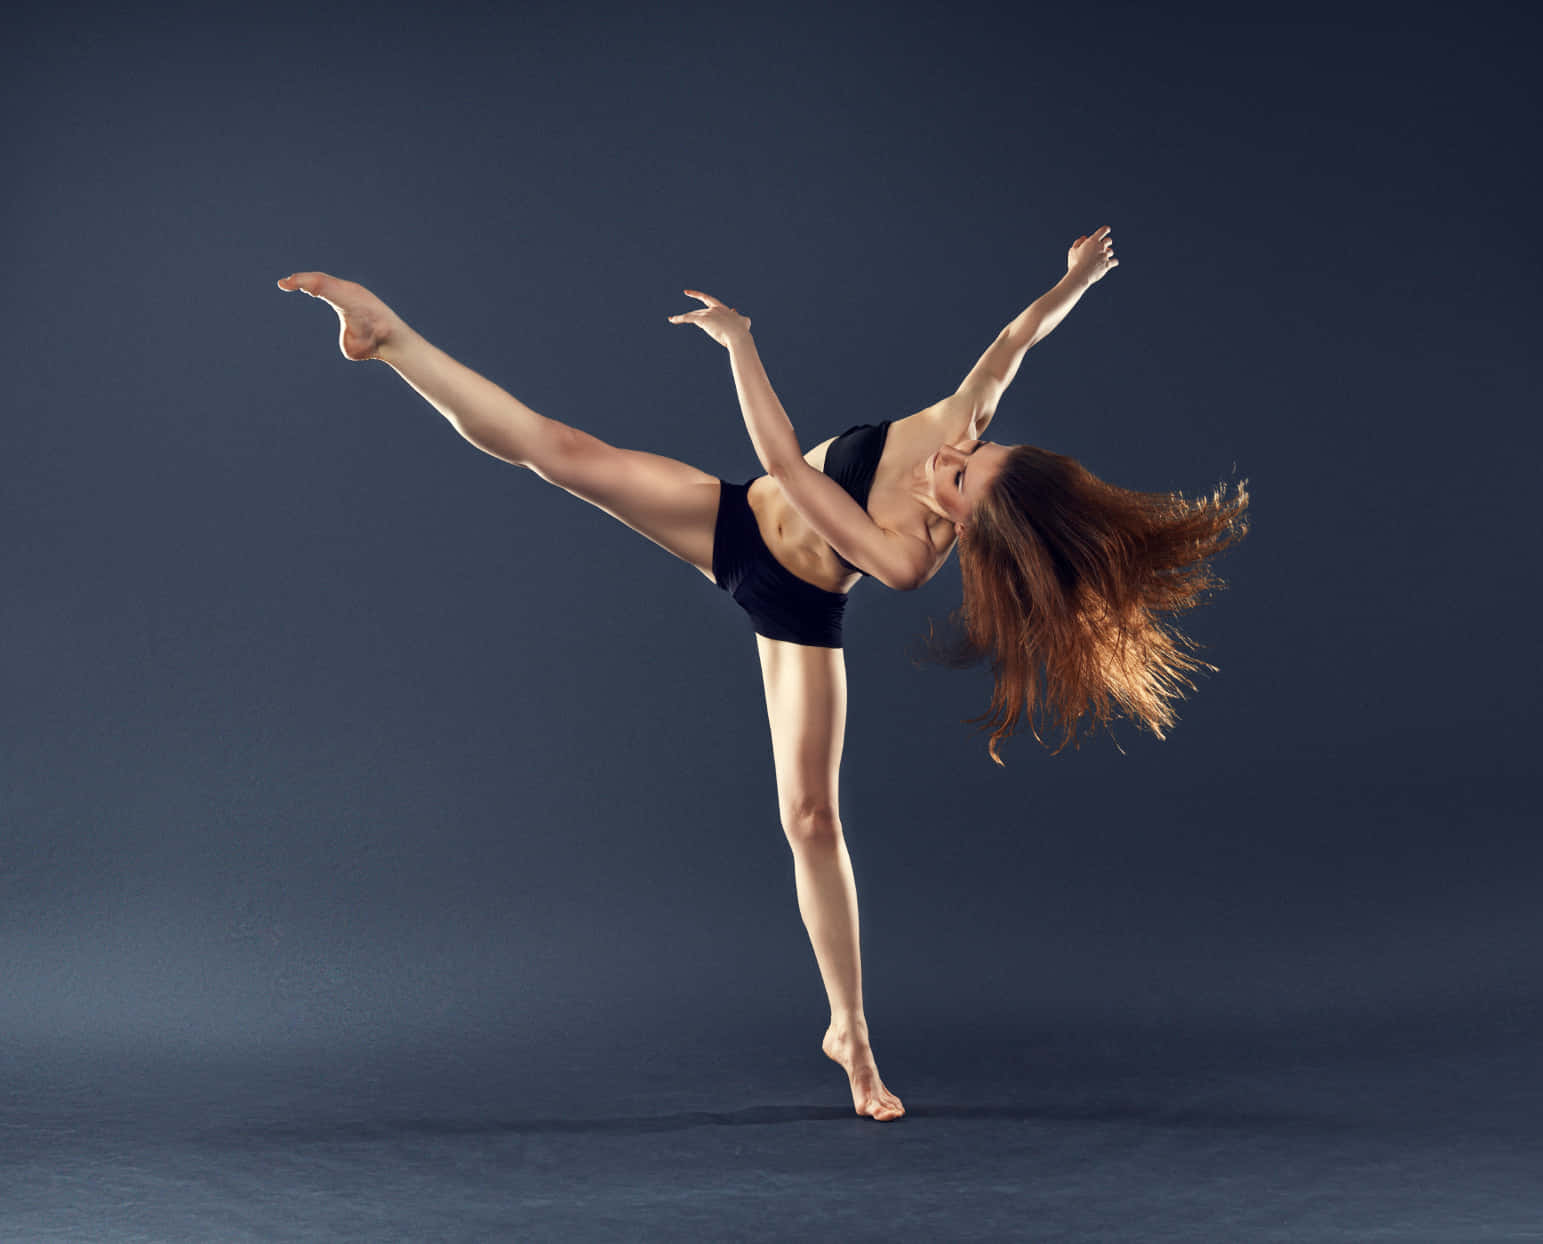 Imagende Una Bailarina De Ballet En Una Pose Extrema.